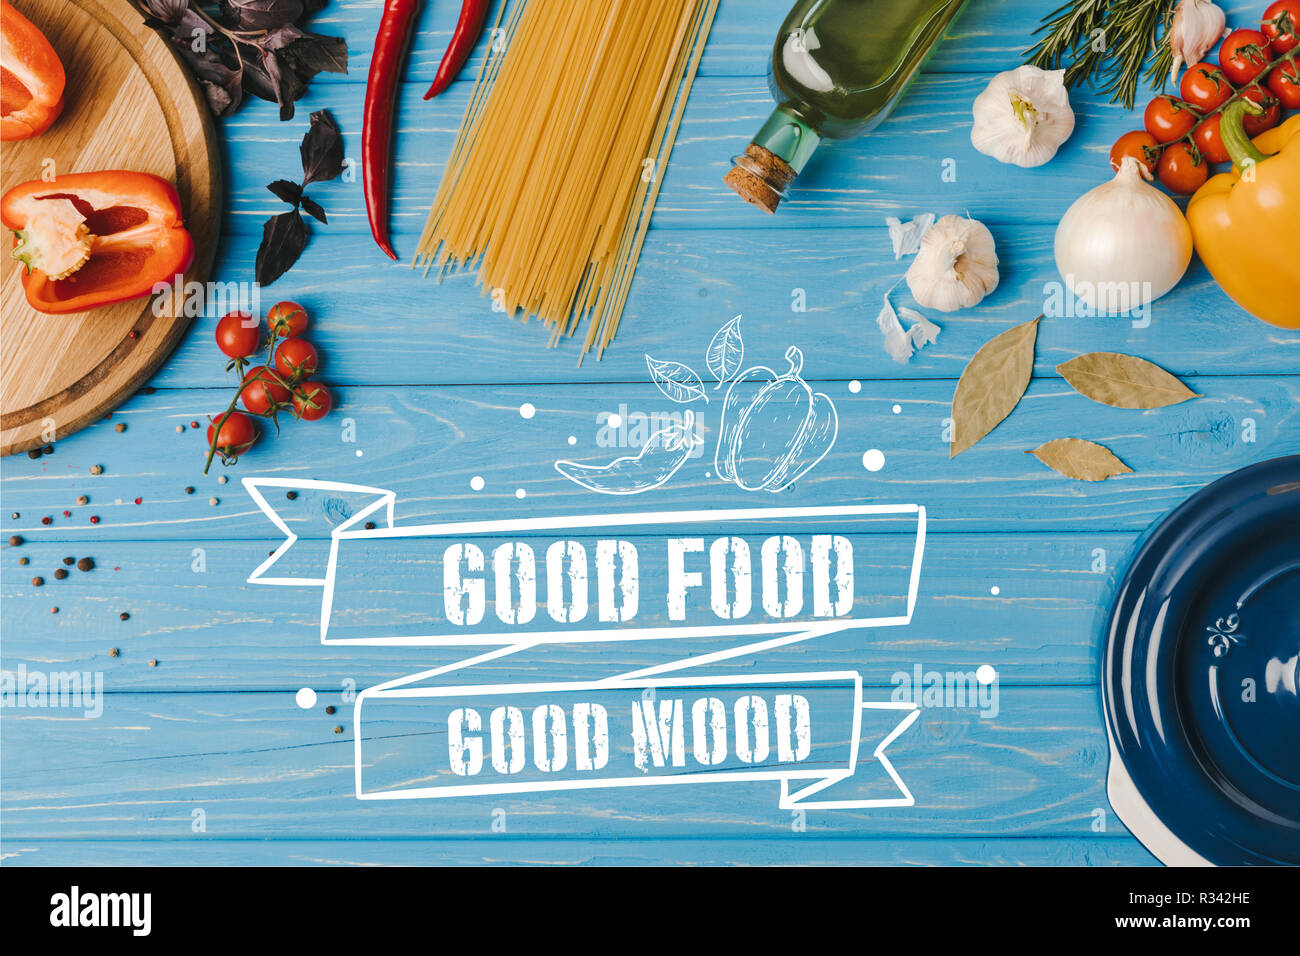 Vue de dessus d'ingrédients pour la cuisson des pâtes sur table bleue, bonne nourriture bonne humeur le lettrage Banque D'Images